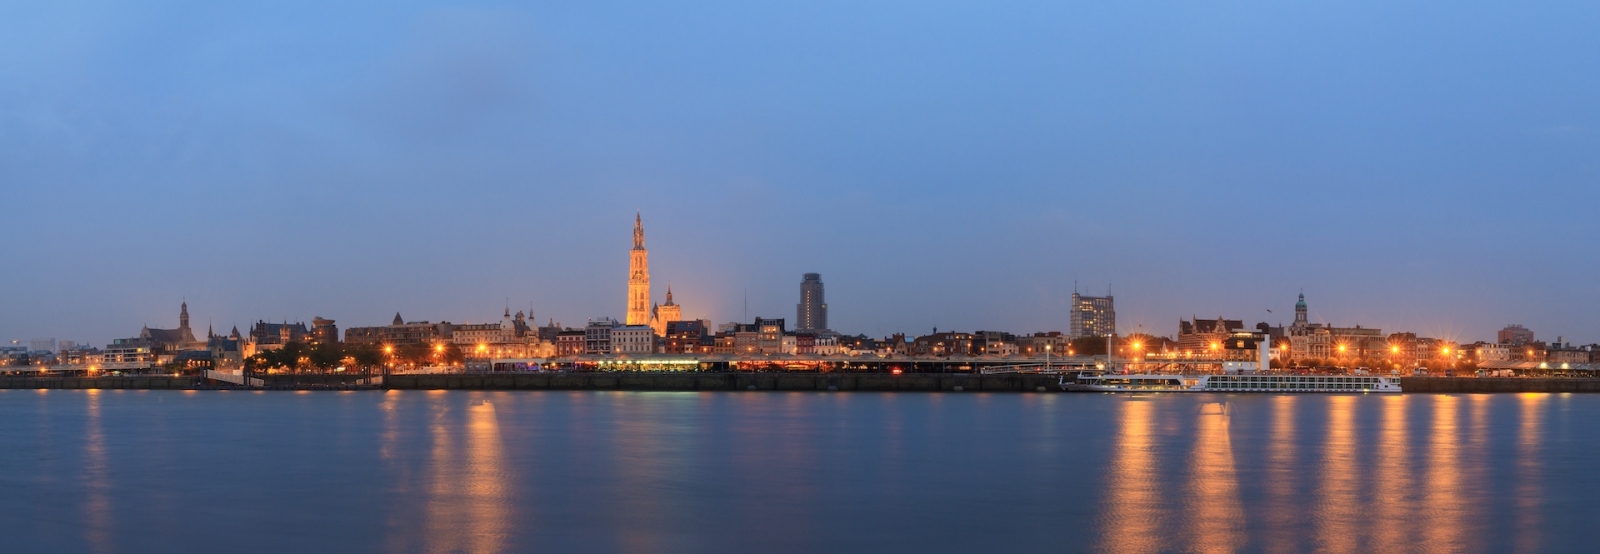 Wunderschönes Stadtpanorama der Skyline von Antwerpen, Belgien, während der blauen Stunde vom Ufer der Schelde aus gesehen